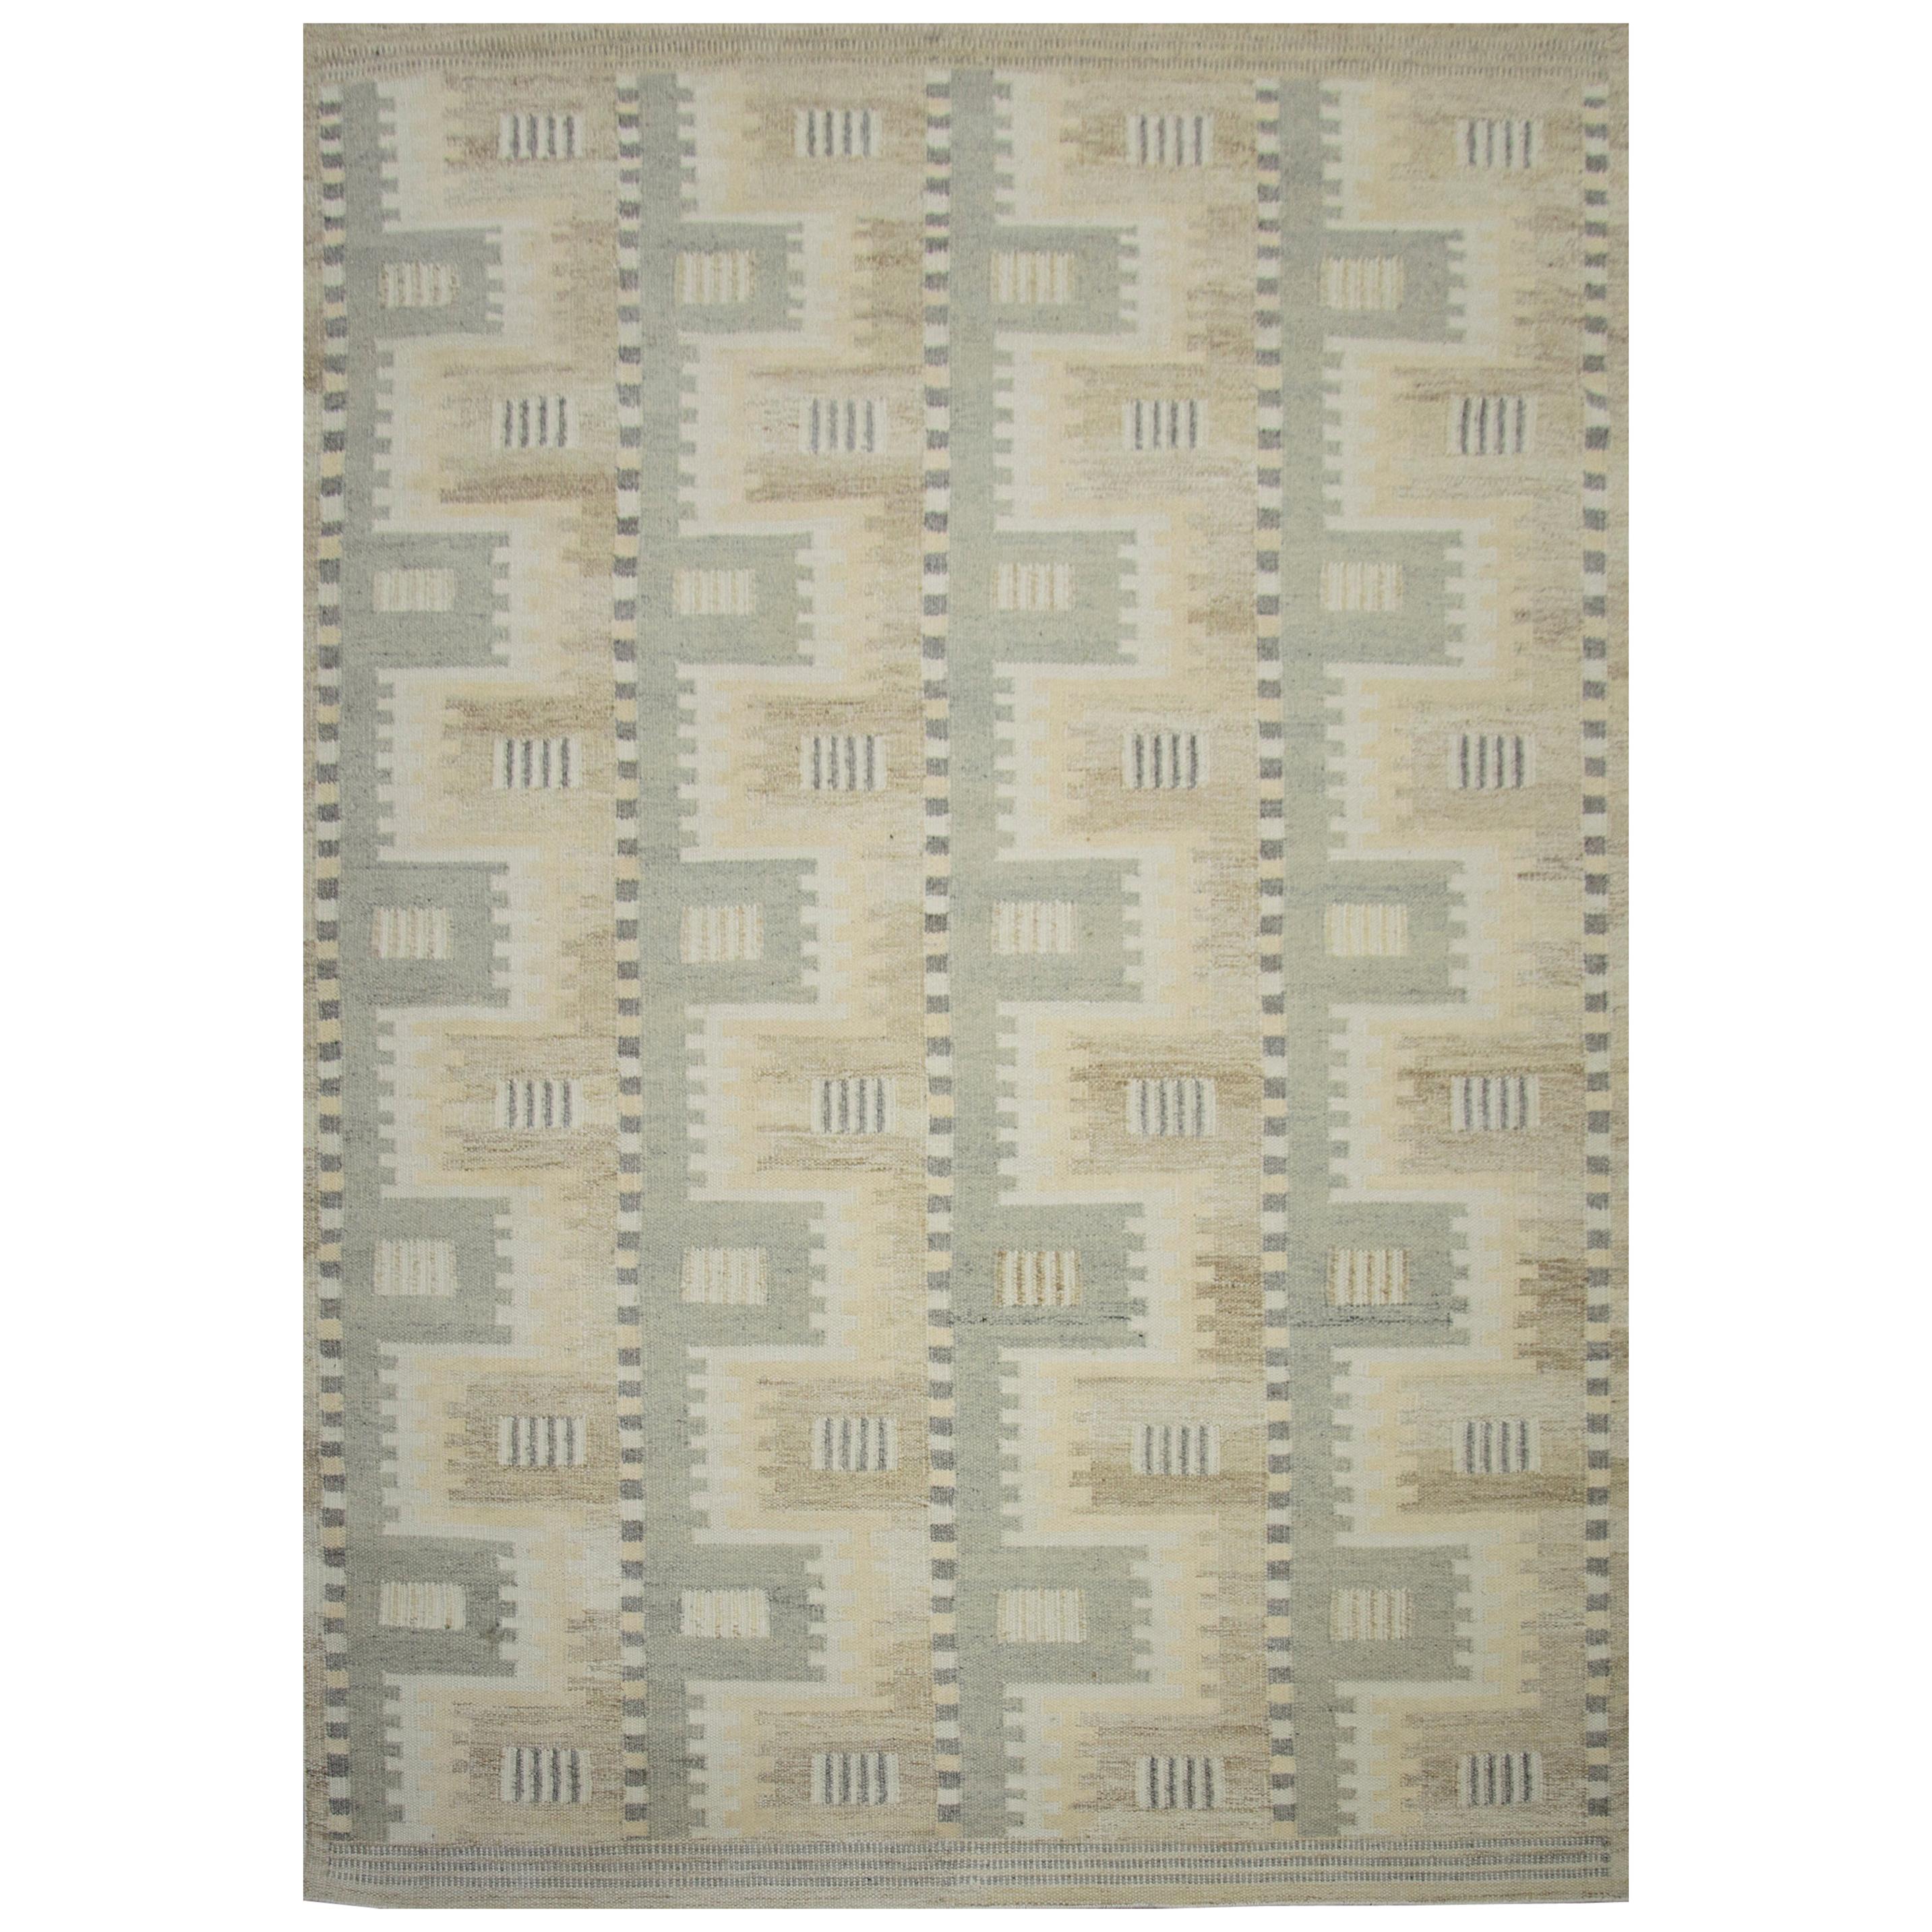 Moderner skandinavischer Teppich mit elfenbeinfarbenen und grauen geometrischen Mustern